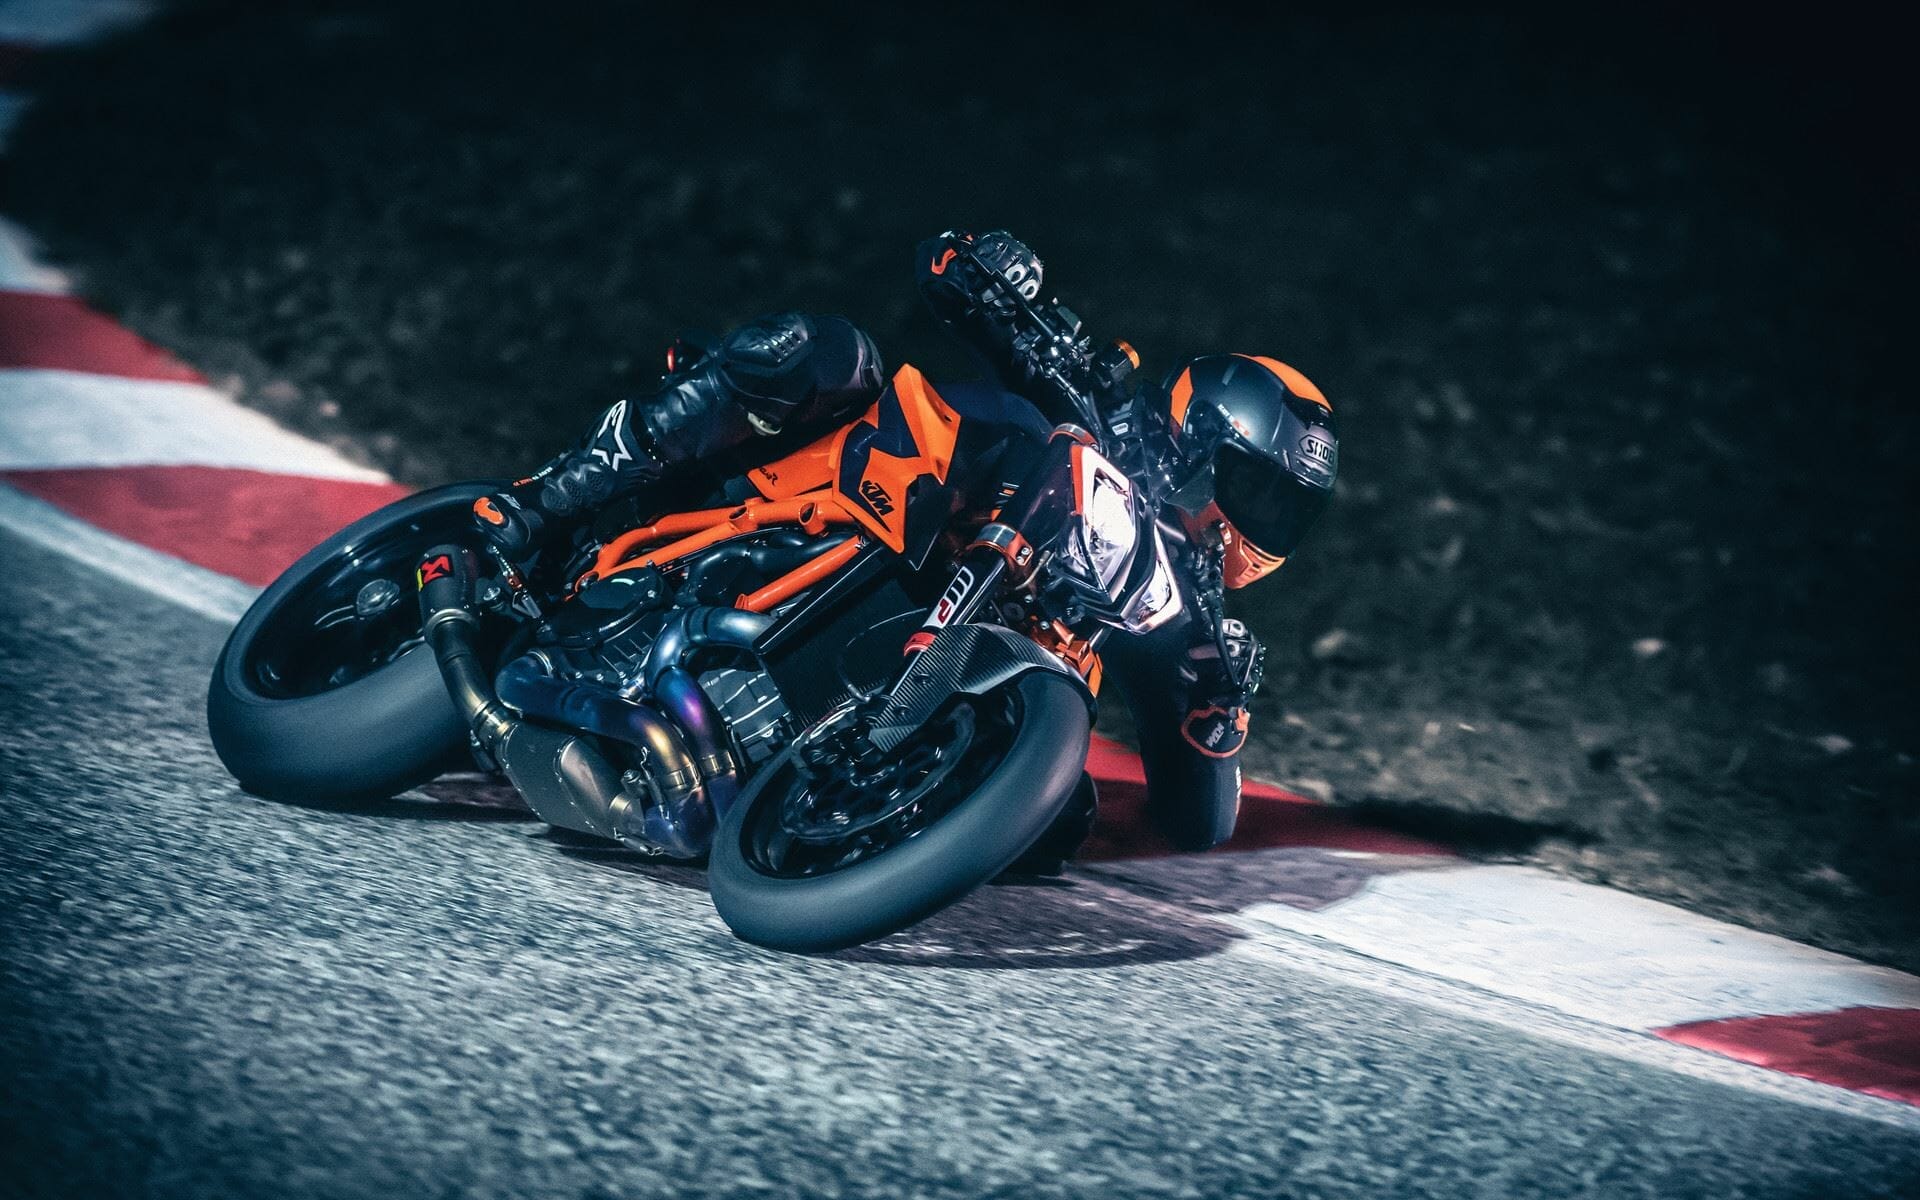 #KTM #1290SuperDukeR
- auch in der Motorrad Nachrichten App